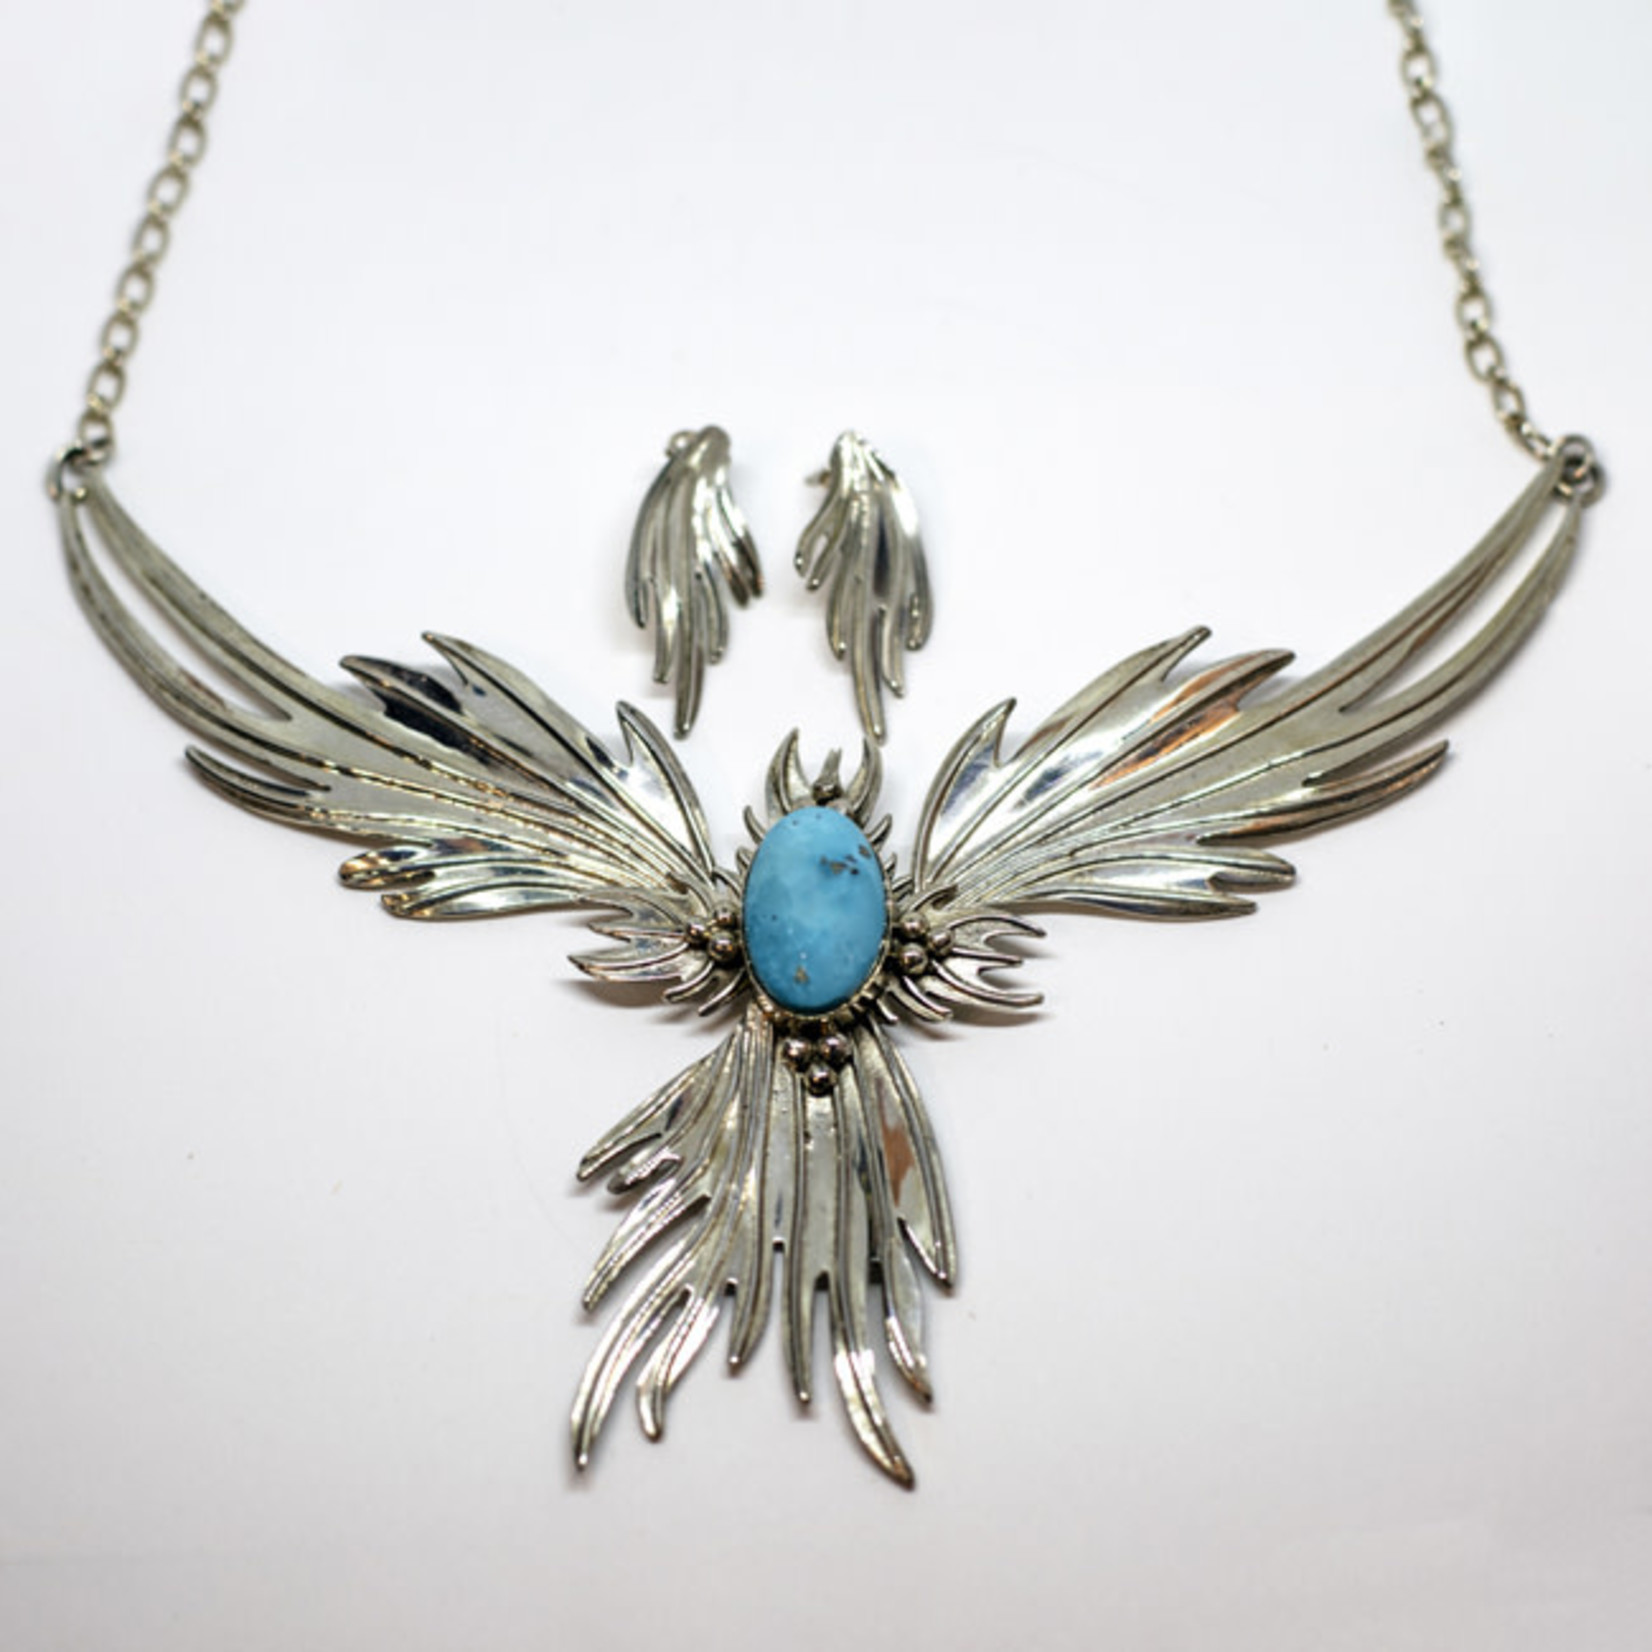 Necklace pendant: artistic phoenix, silver